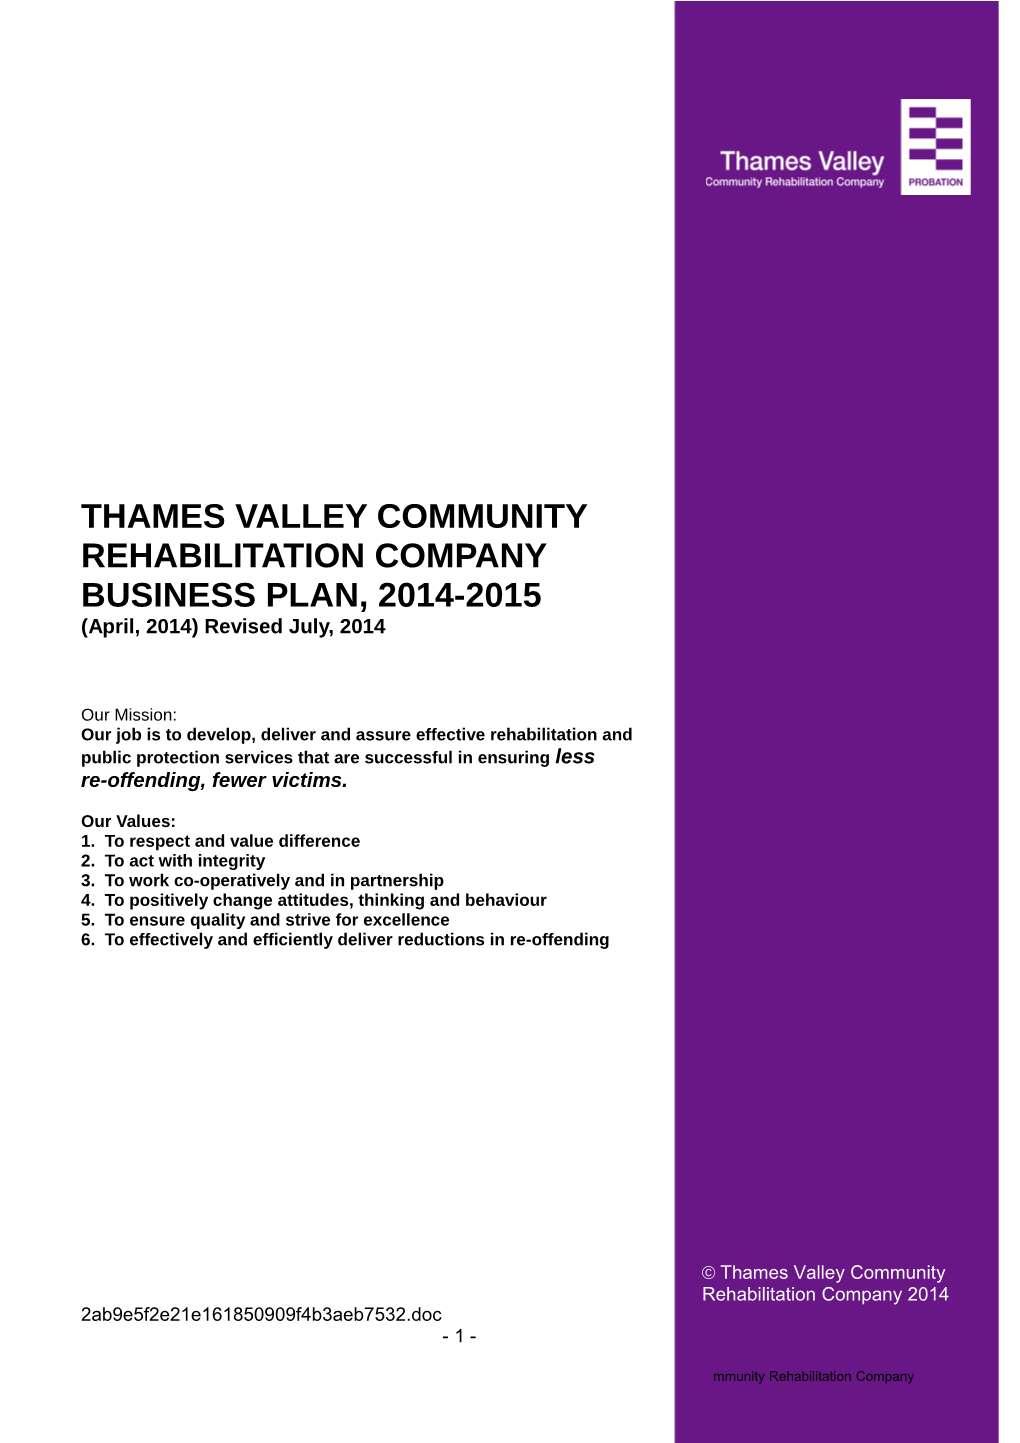 Thames Valley Community Rehabilitation Company